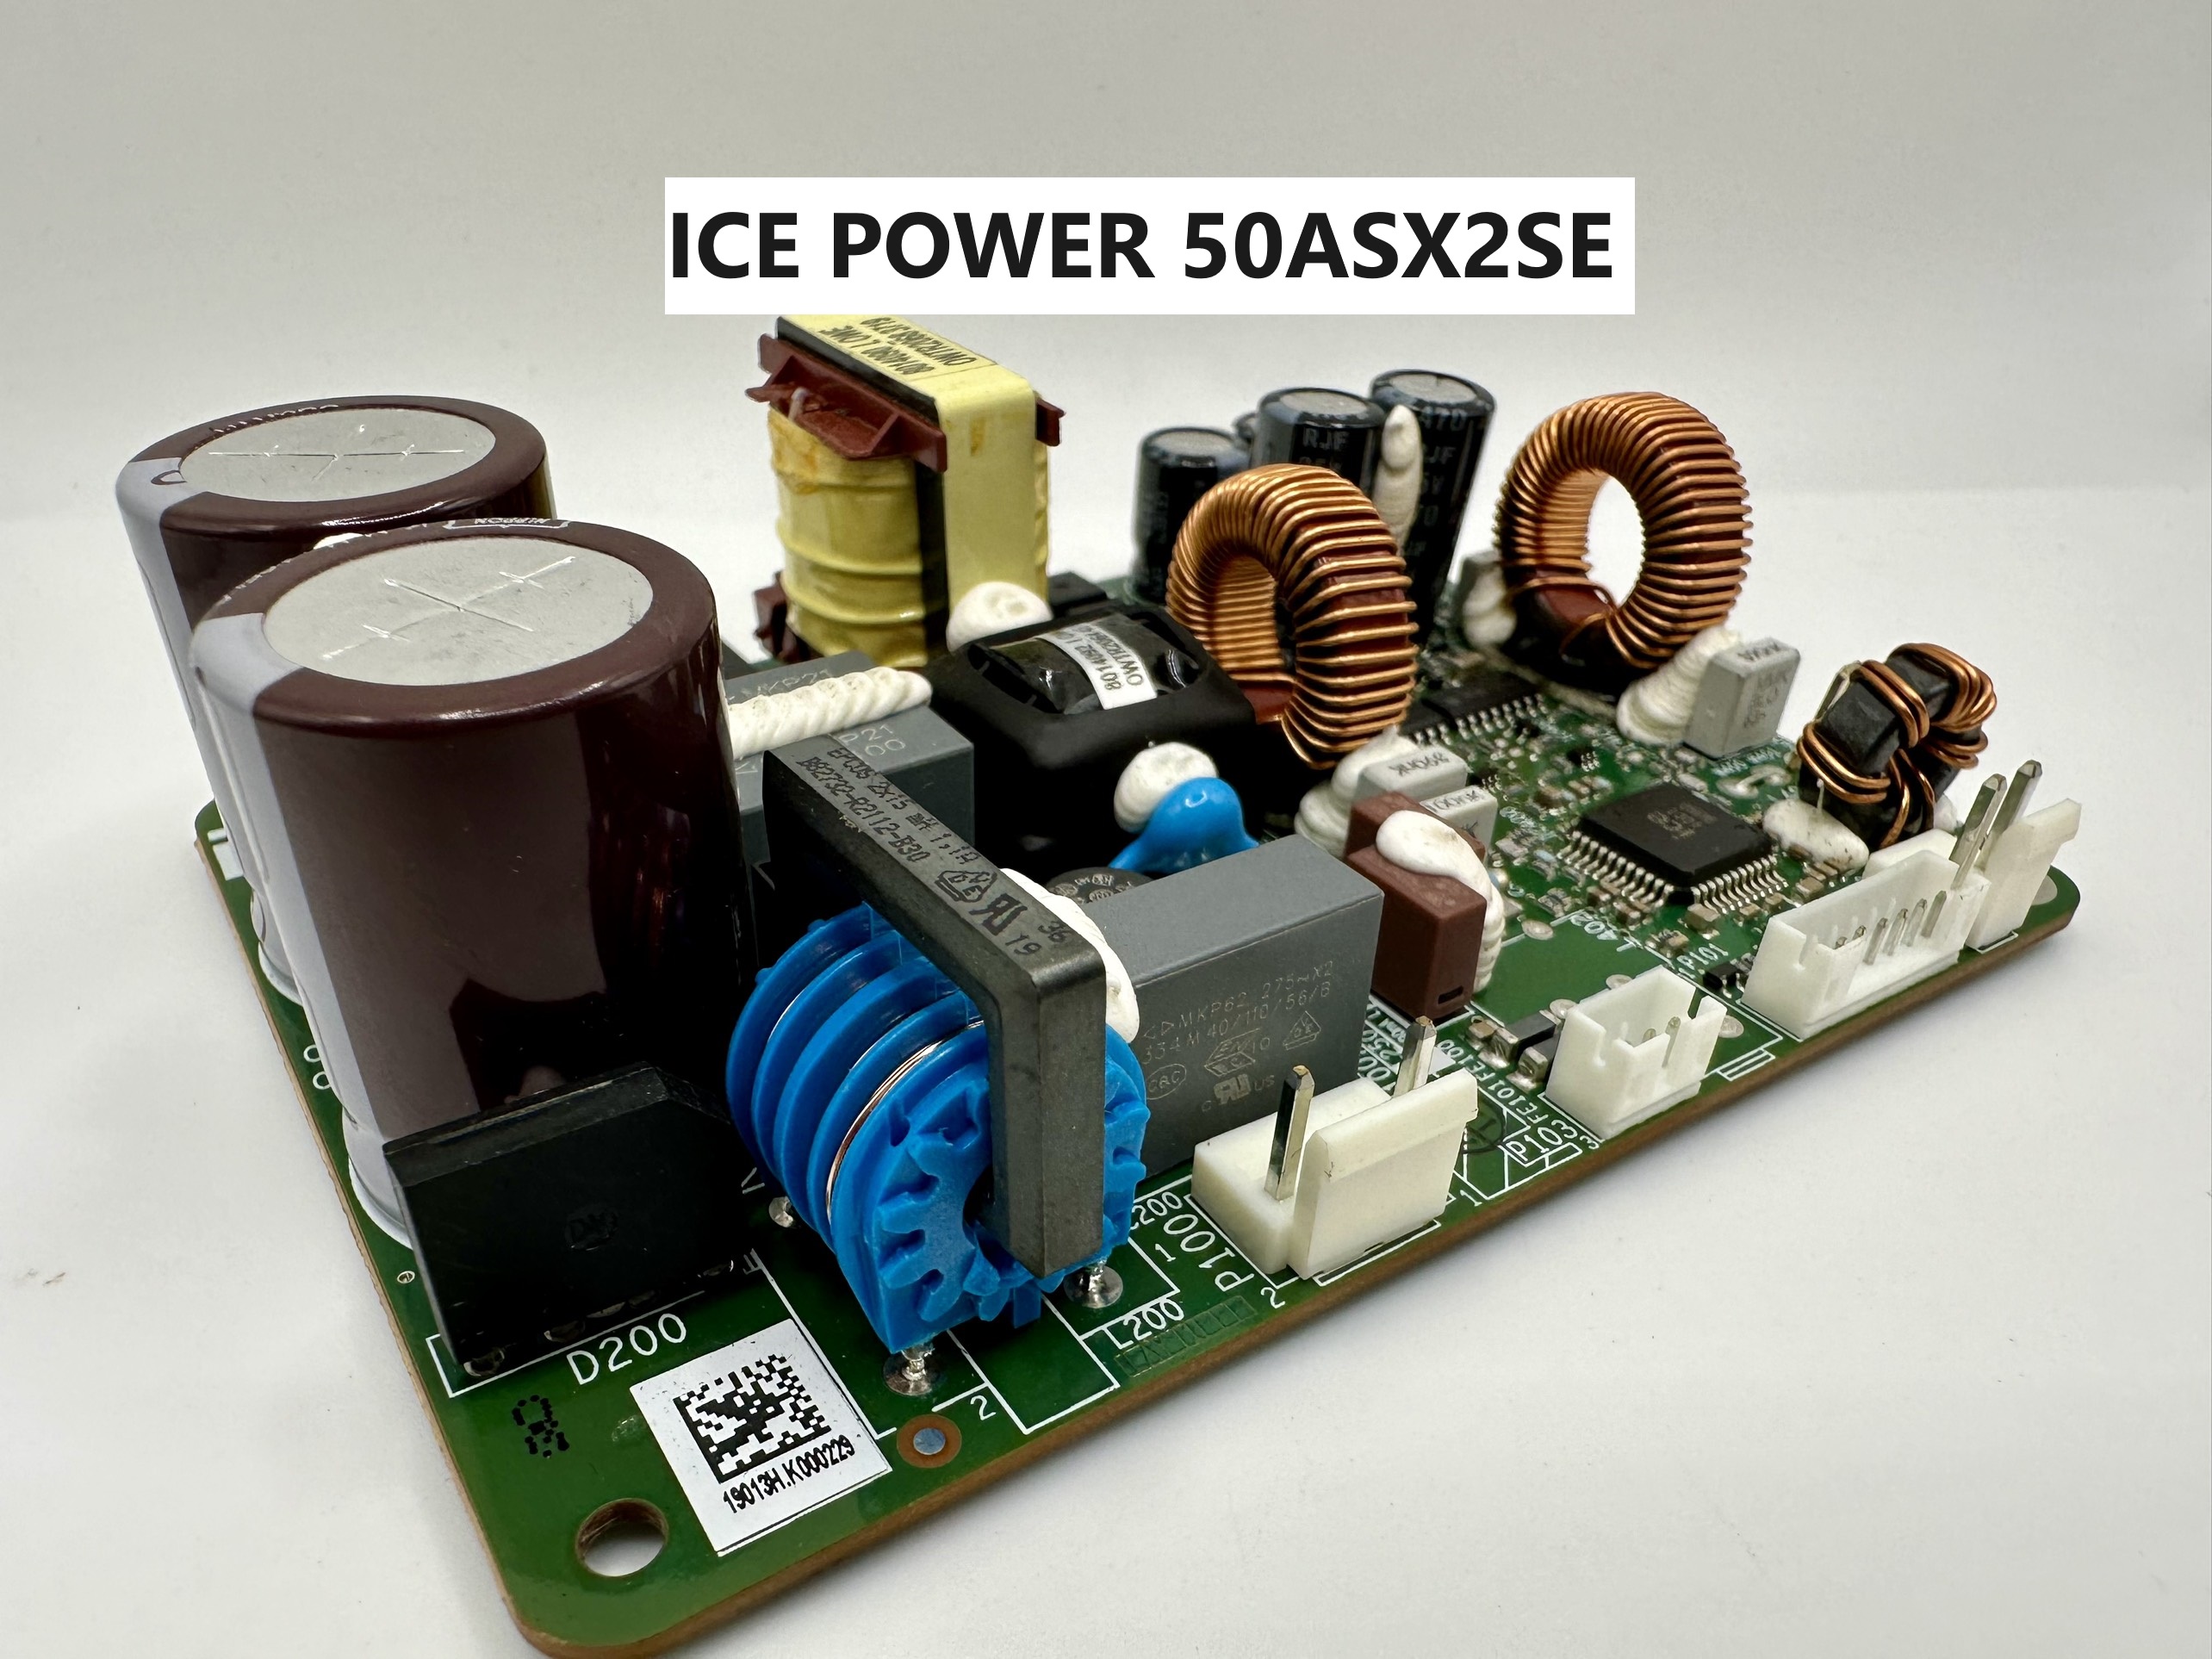 ICEpower 50ASX2SE 170W MONO